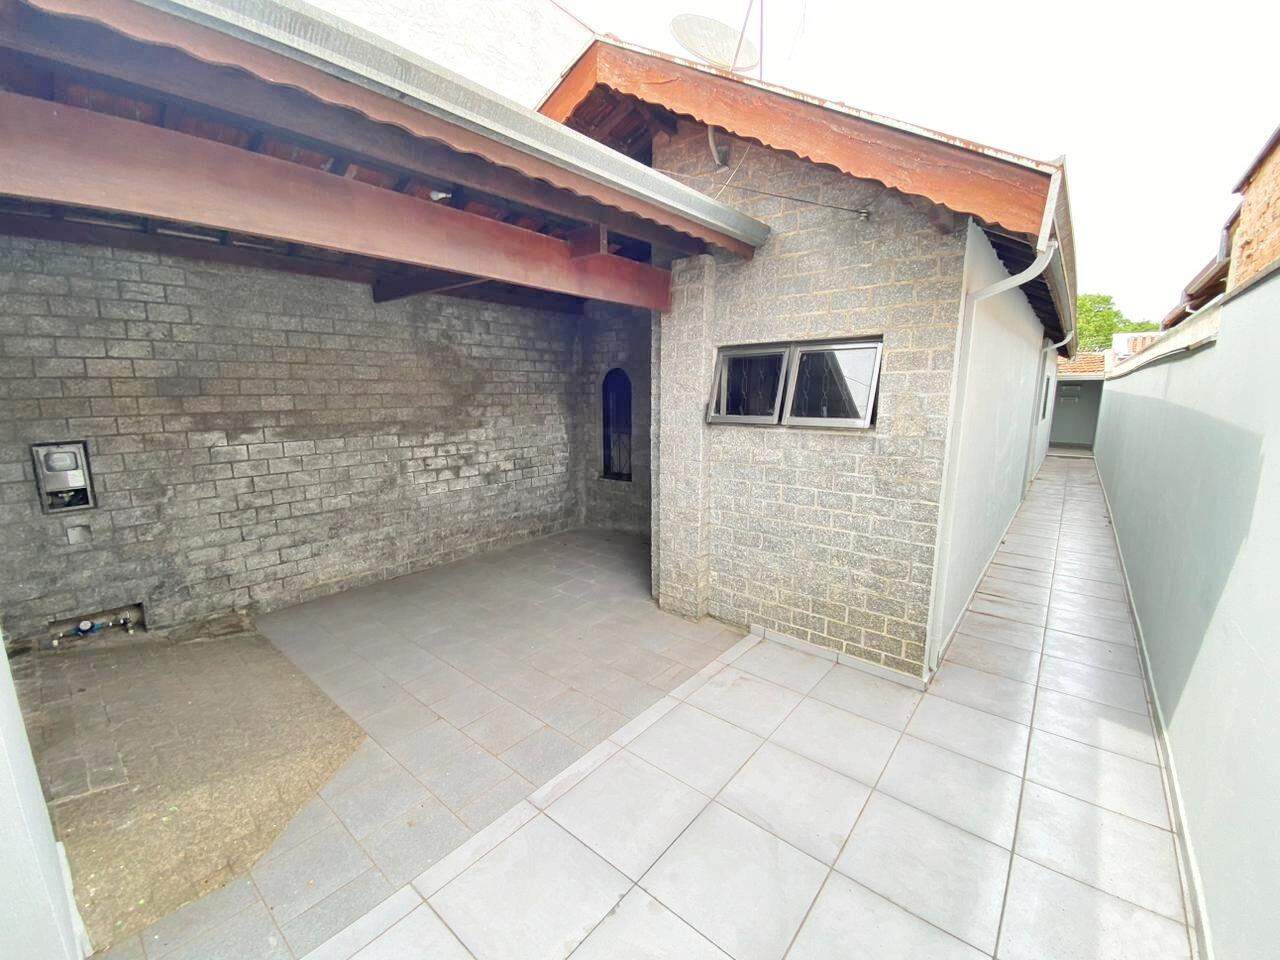 Casa à venda, 2 quartos, 1 vaga, no bairro Iaa em Piracicaba - SP